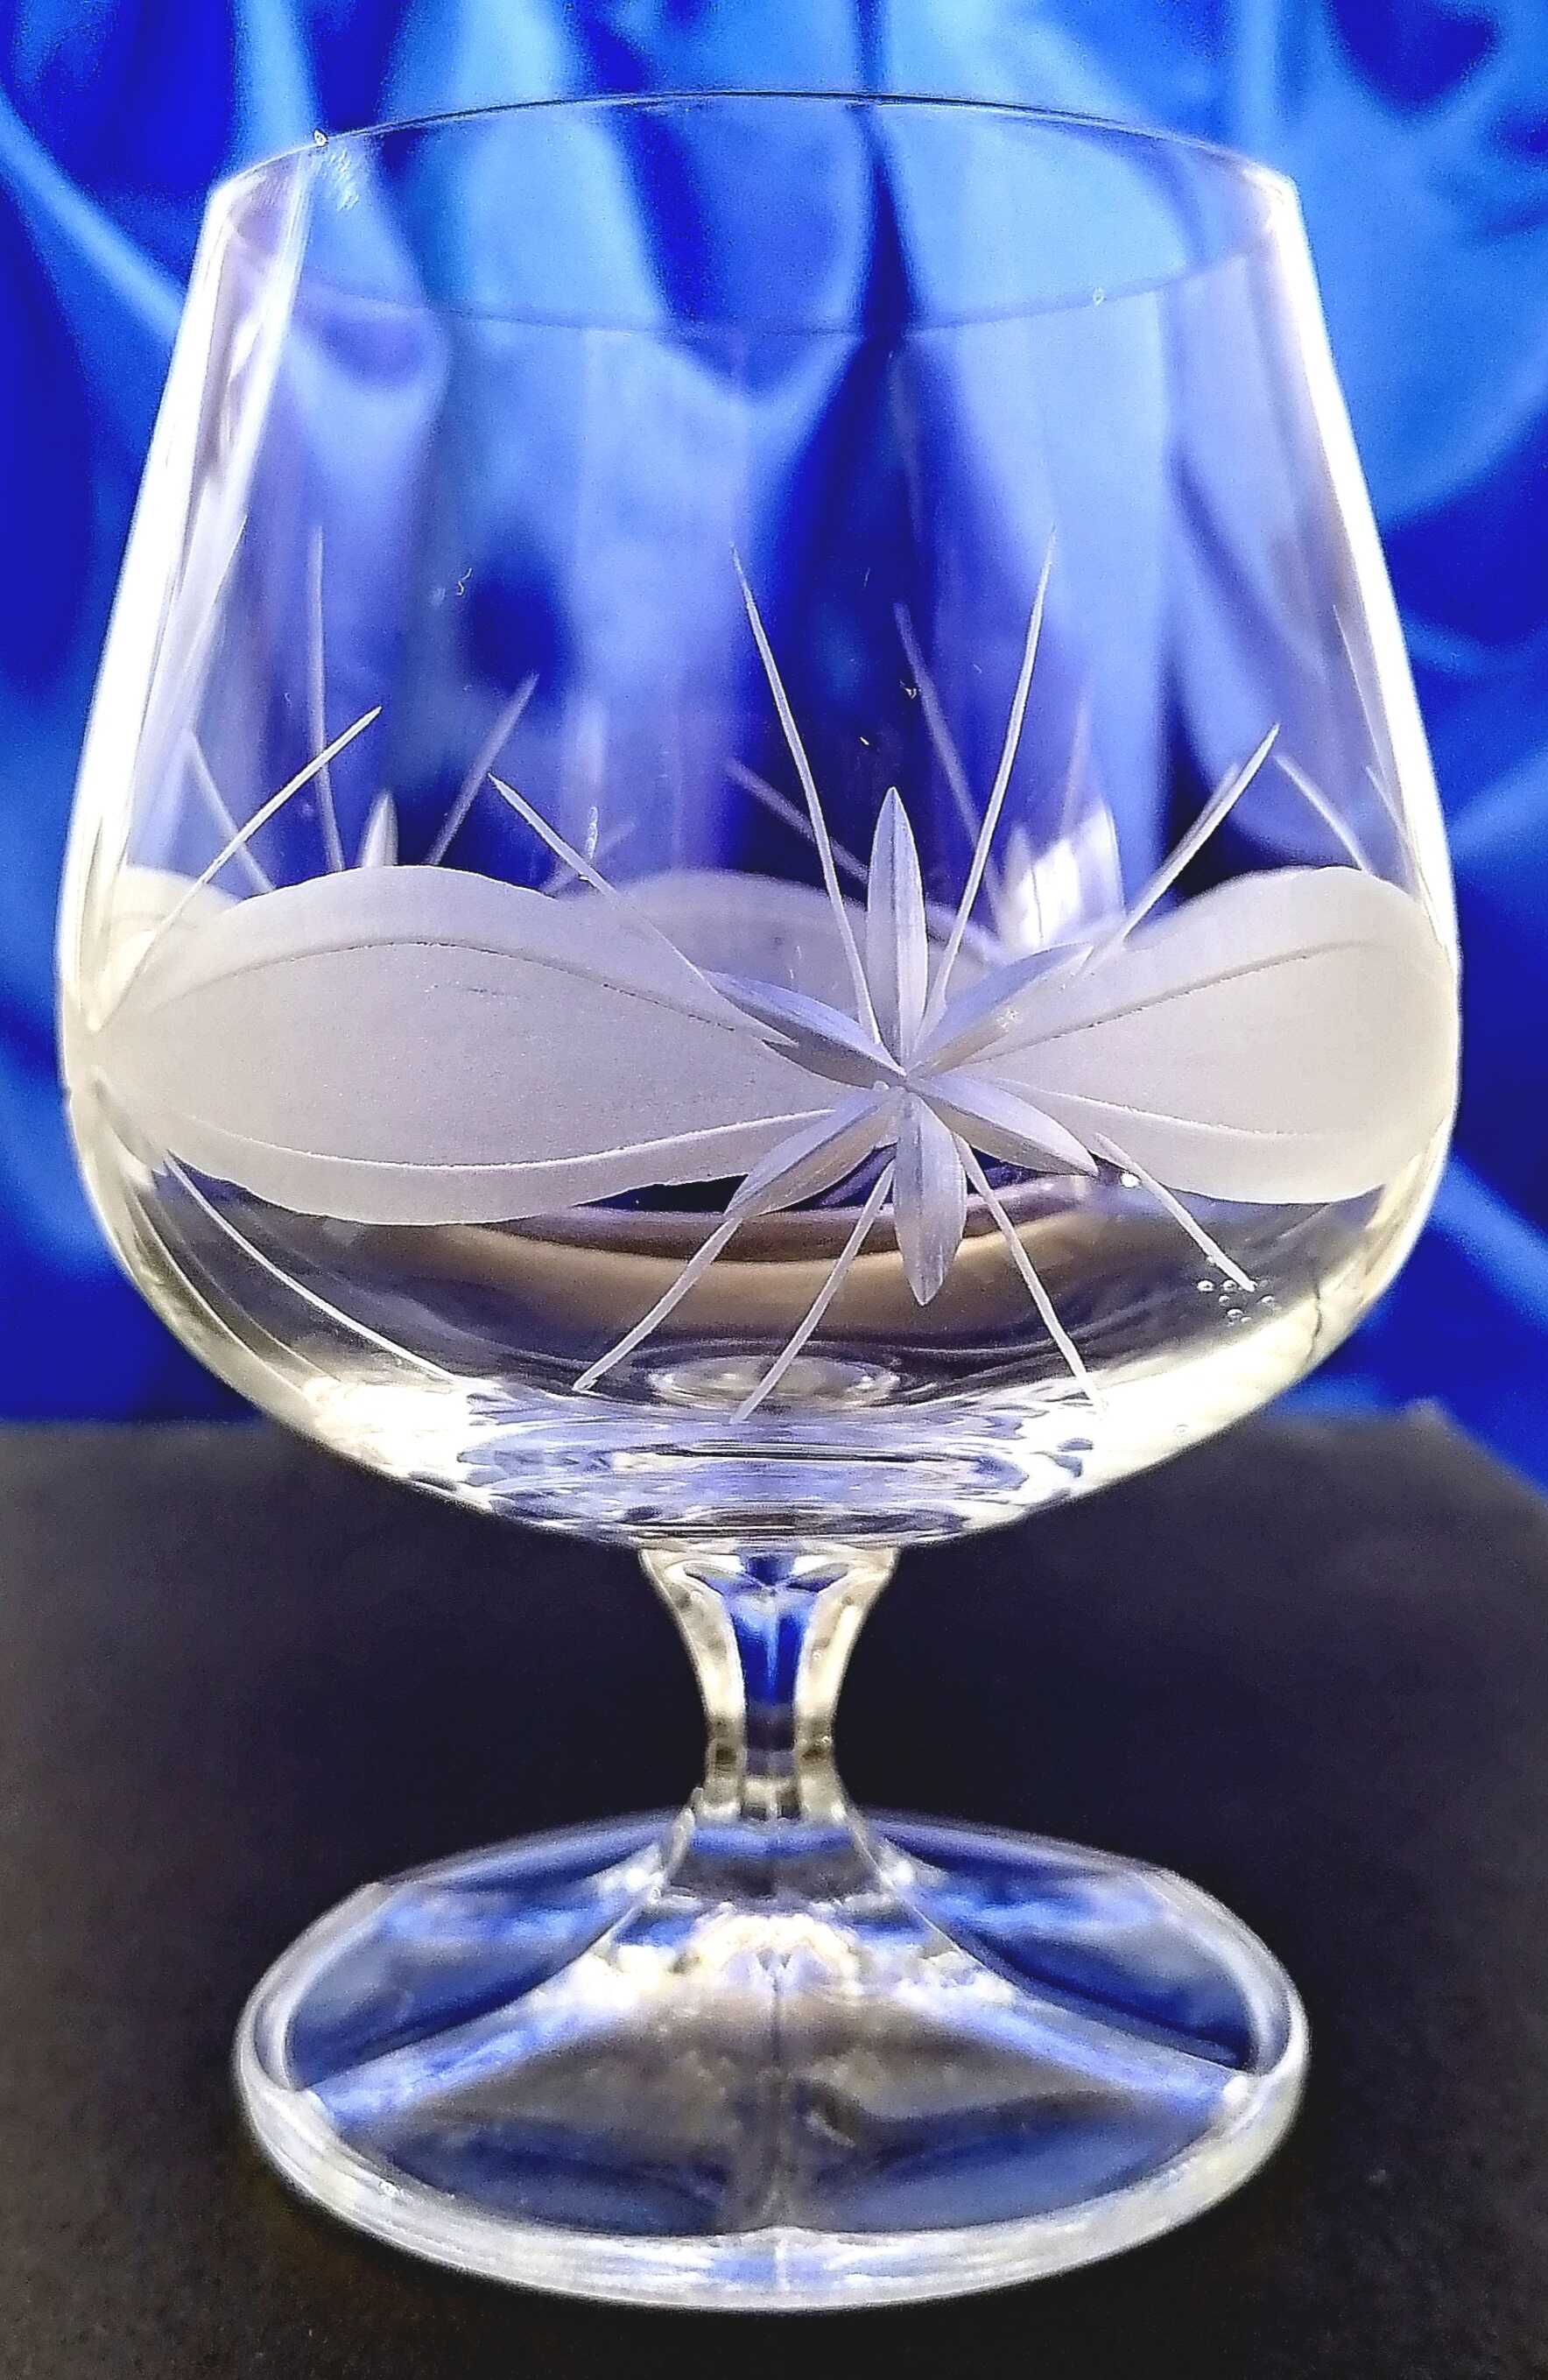 LsG-Crystal sklenice Skleničky na koňak ručně broušené dekor Kanta dárkové balení satén Christine-199 250 ml 6 Ks.